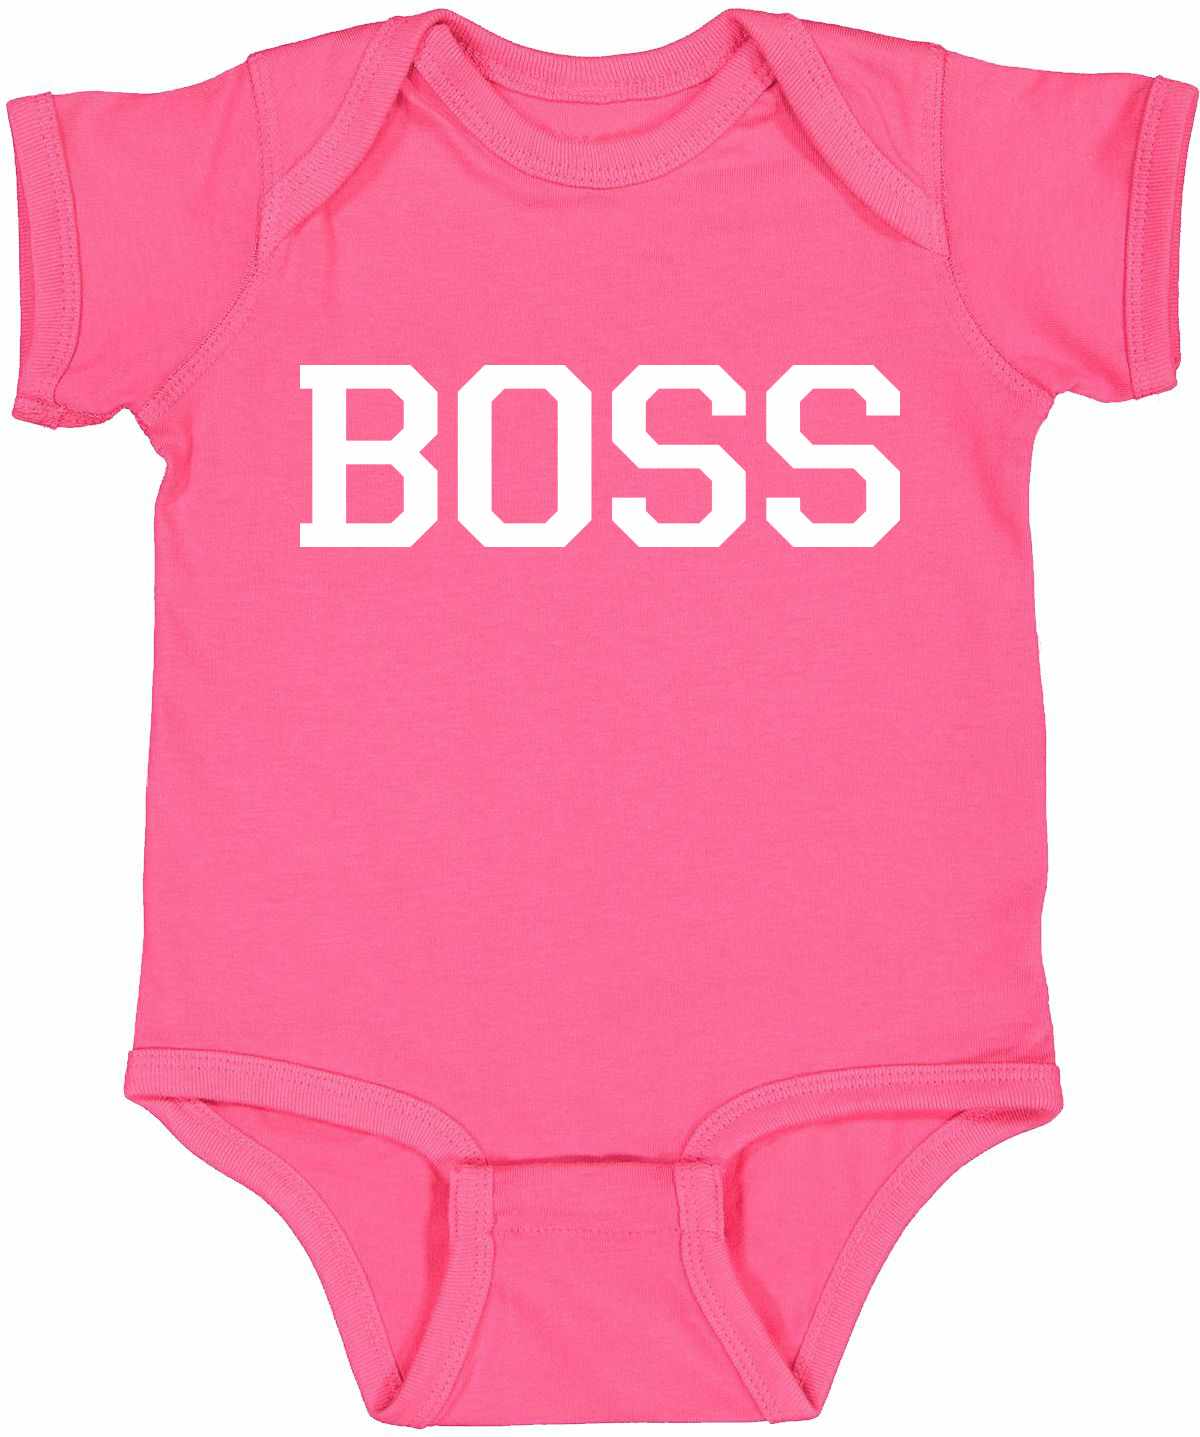 BOSS on Infant BodySuit (#441-10)